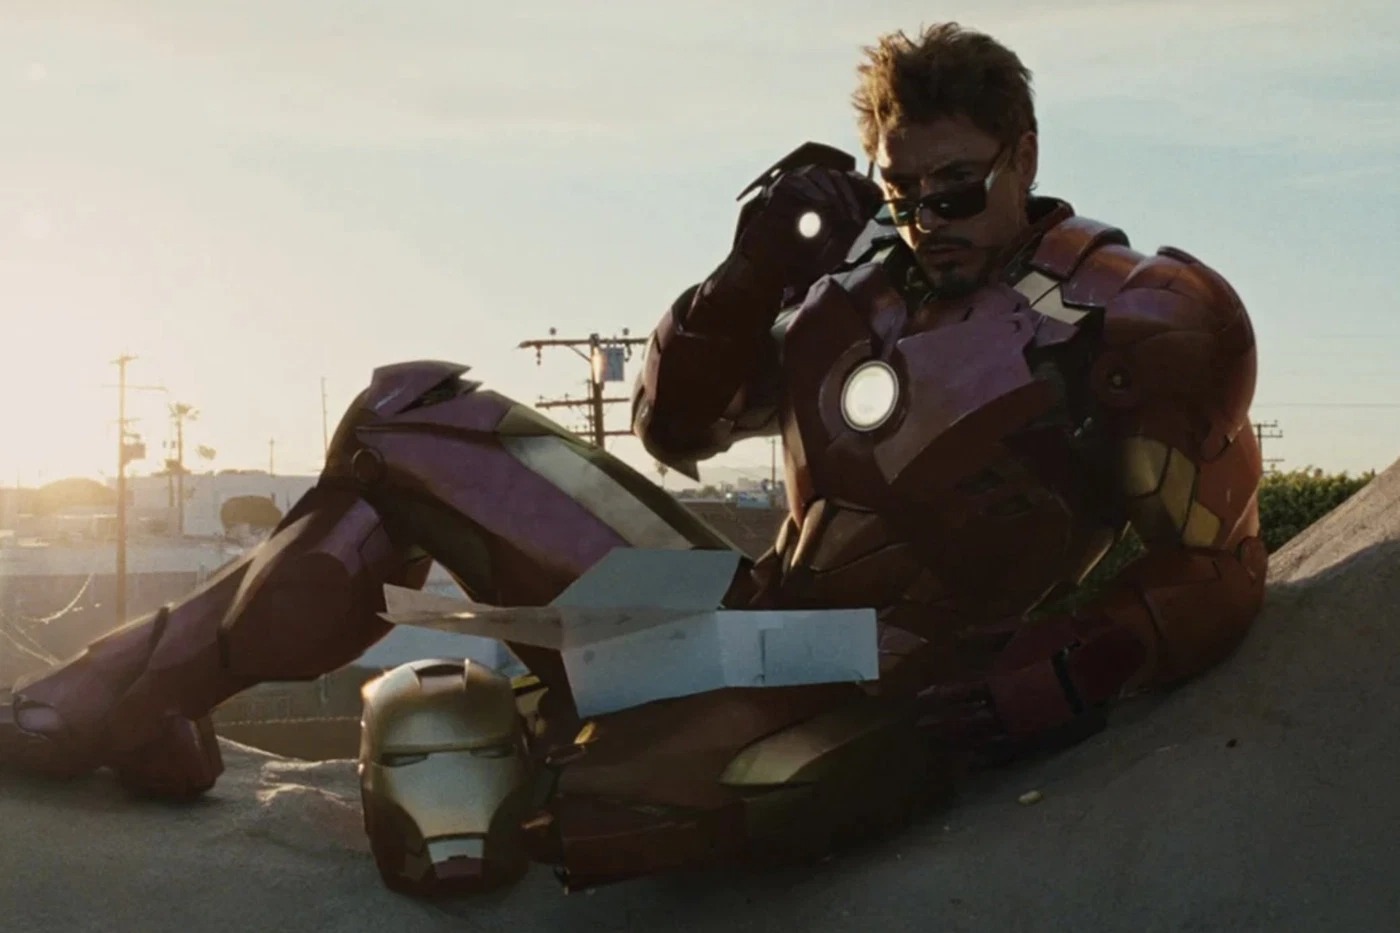 10 khoảnh khắc ngầu nhất của Tony Stark - Iron Man trong MCU (Phần 1)